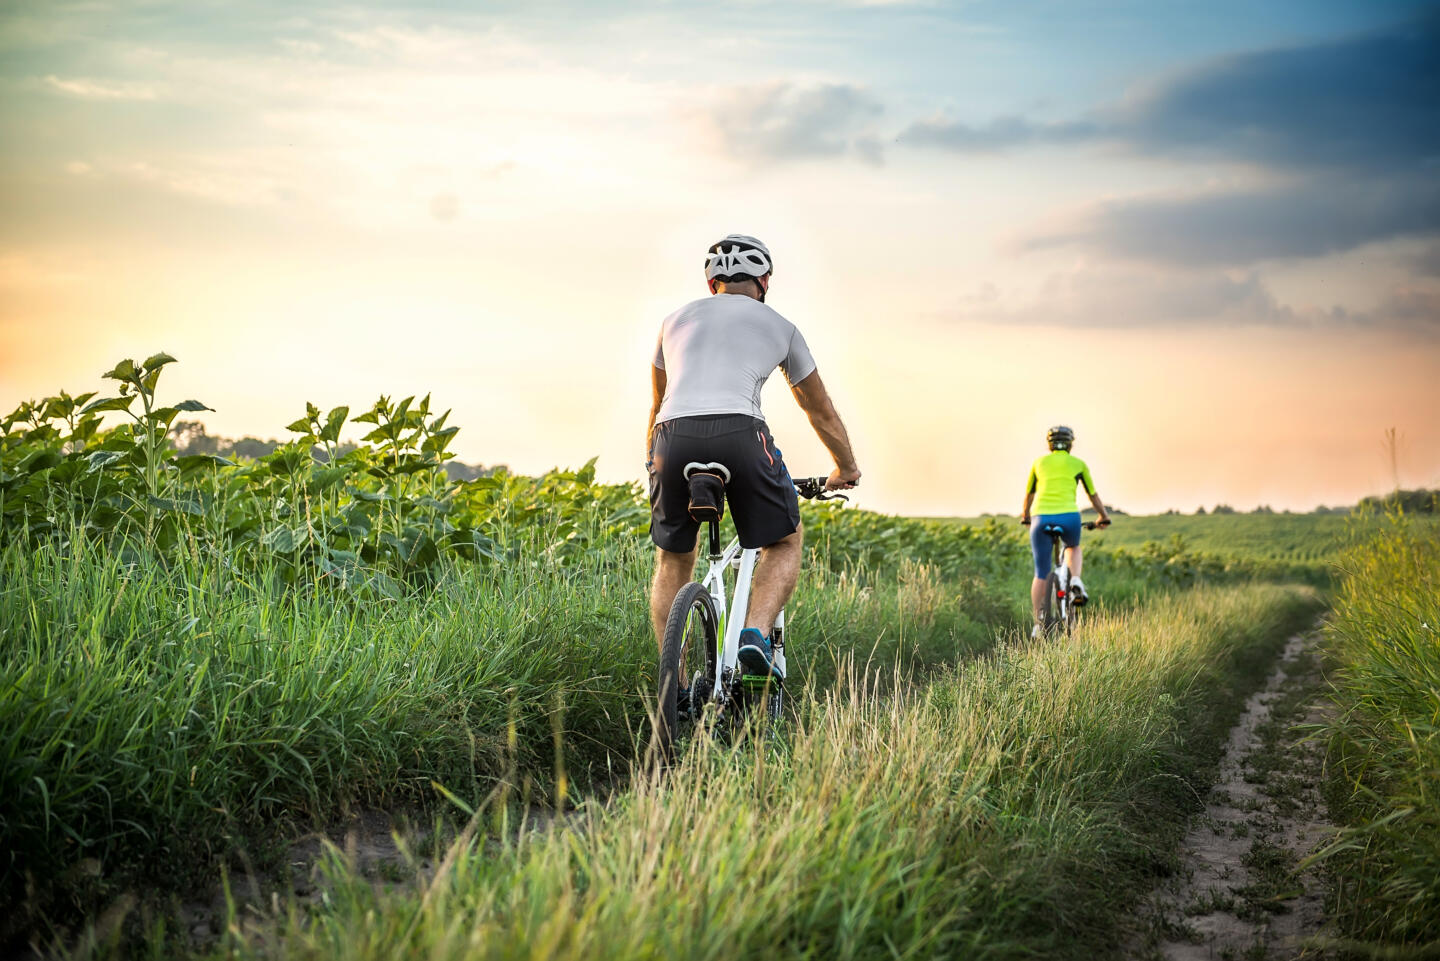 5 идей для велоэкскурсий и велопоход: как провести ближайшие выходные активно. Изображение номер 4